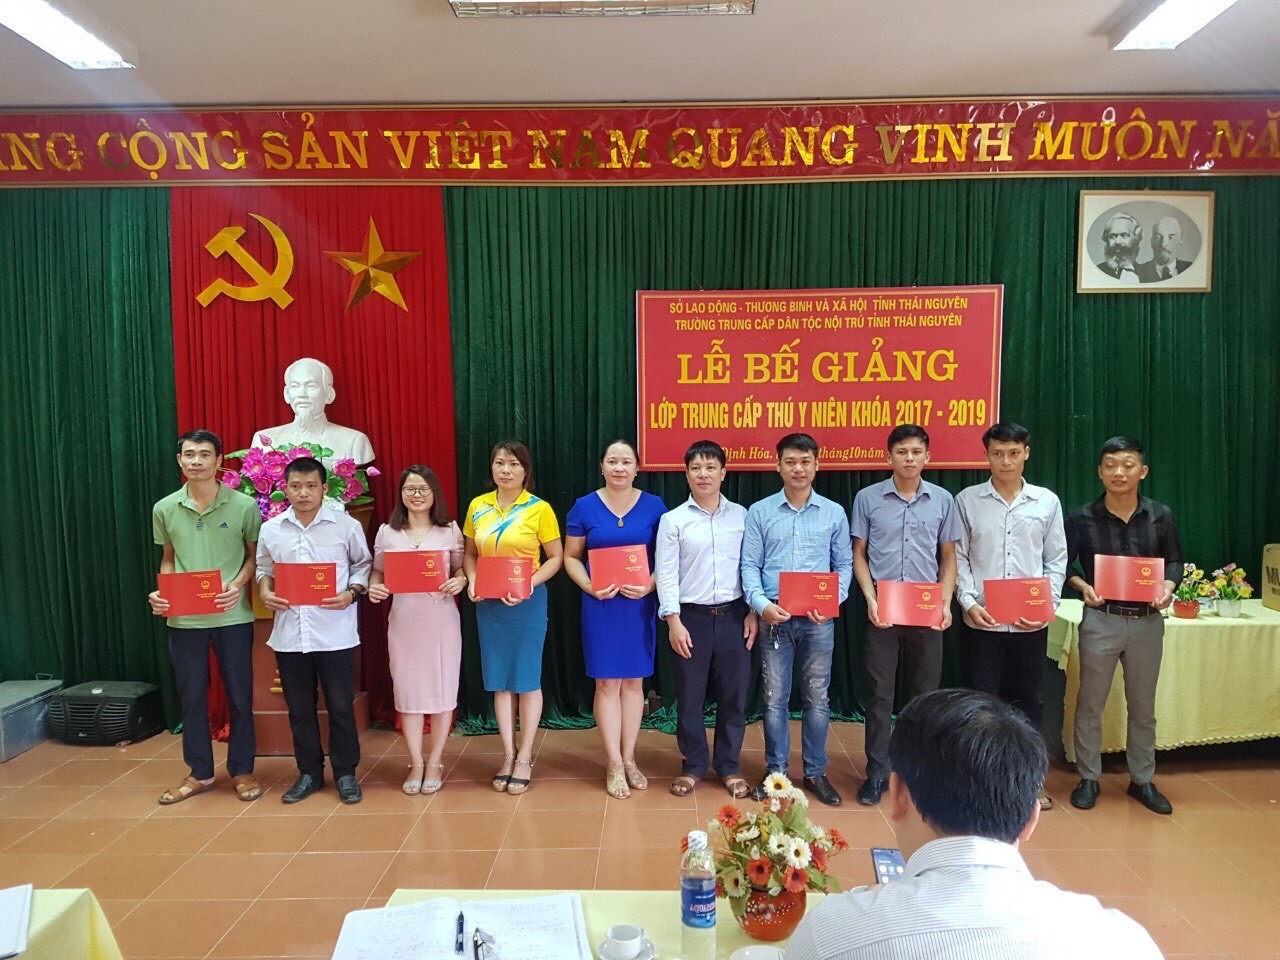 Hiệu quả tích cực trong công tác đào tạo nghề và giải quyết việc làm ở Thái Nguyên